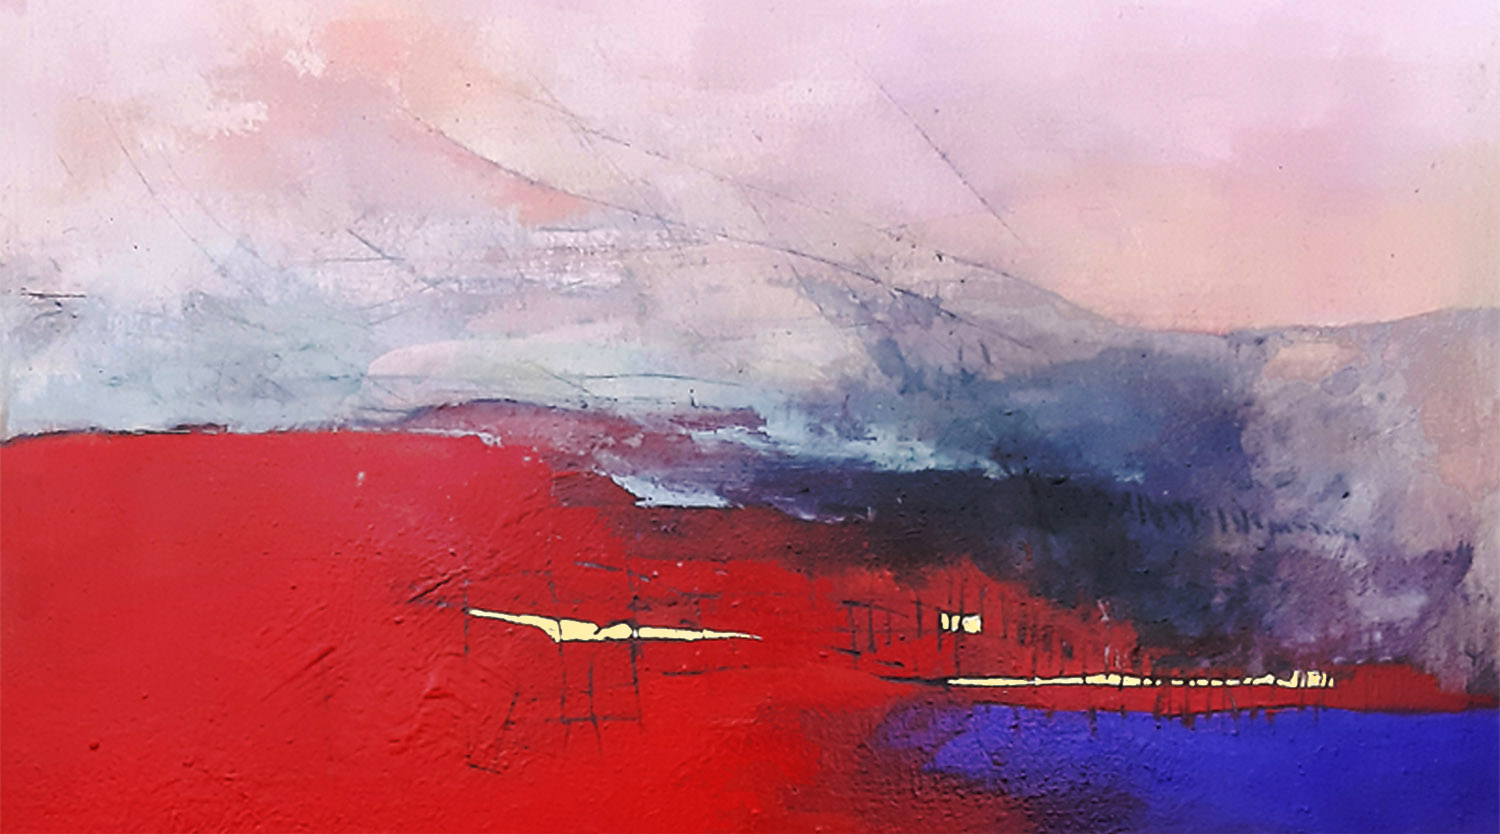 Paesaggio in Rosso,acrilico su tela, dipinti di paesaggi astratti di Sergio Aiello artista contemporaneo al sito sergioaiello.com